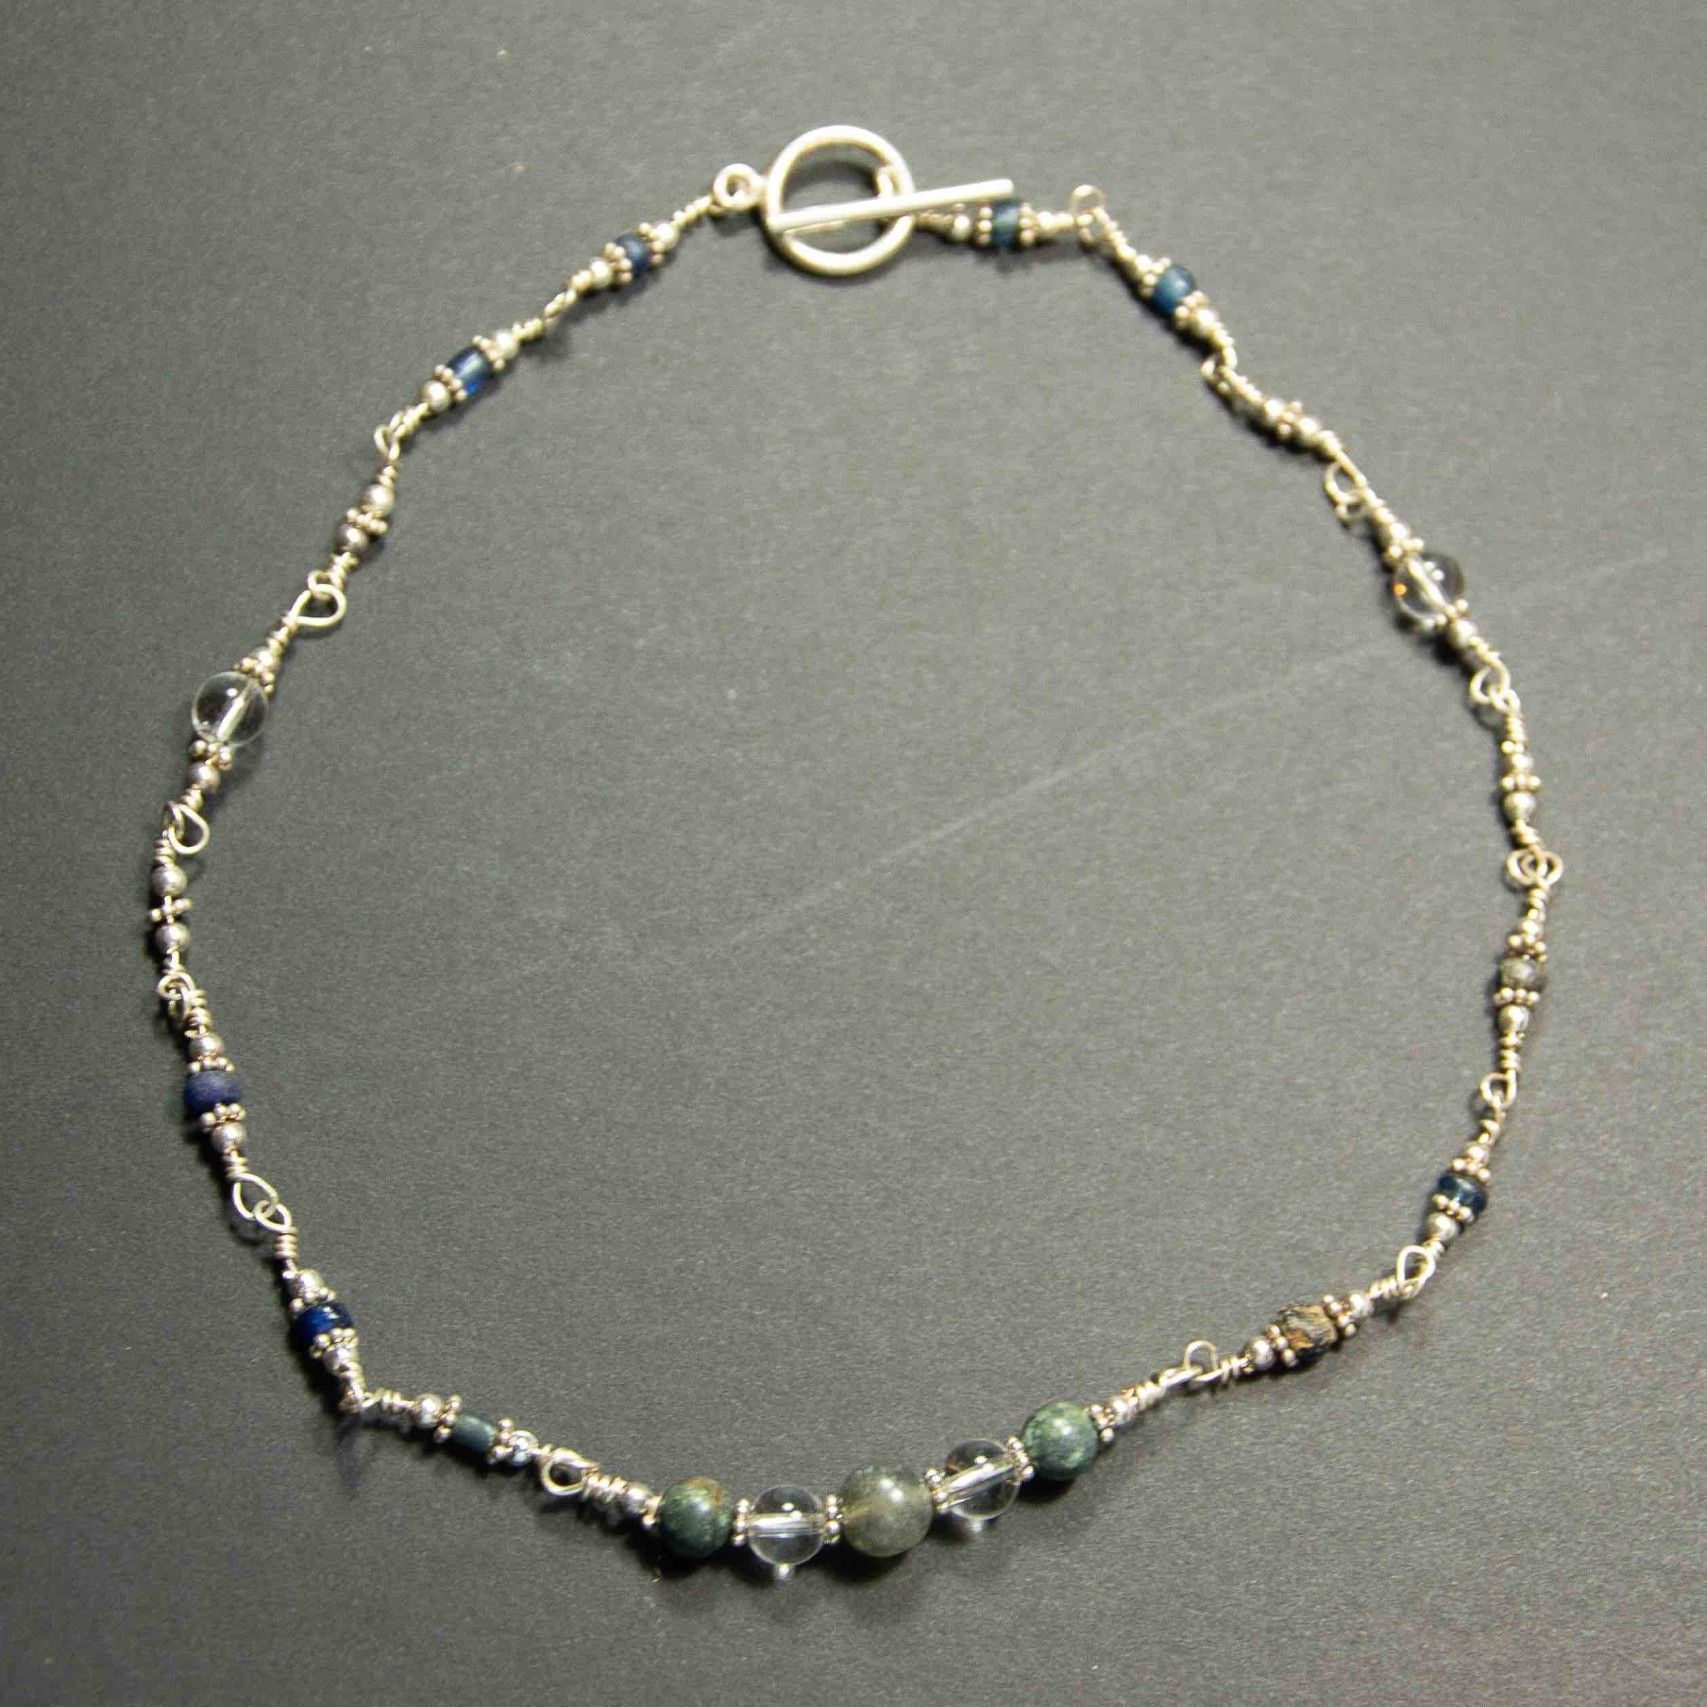 Collier argent 925 avec perles en verre très anciennes (romaines)